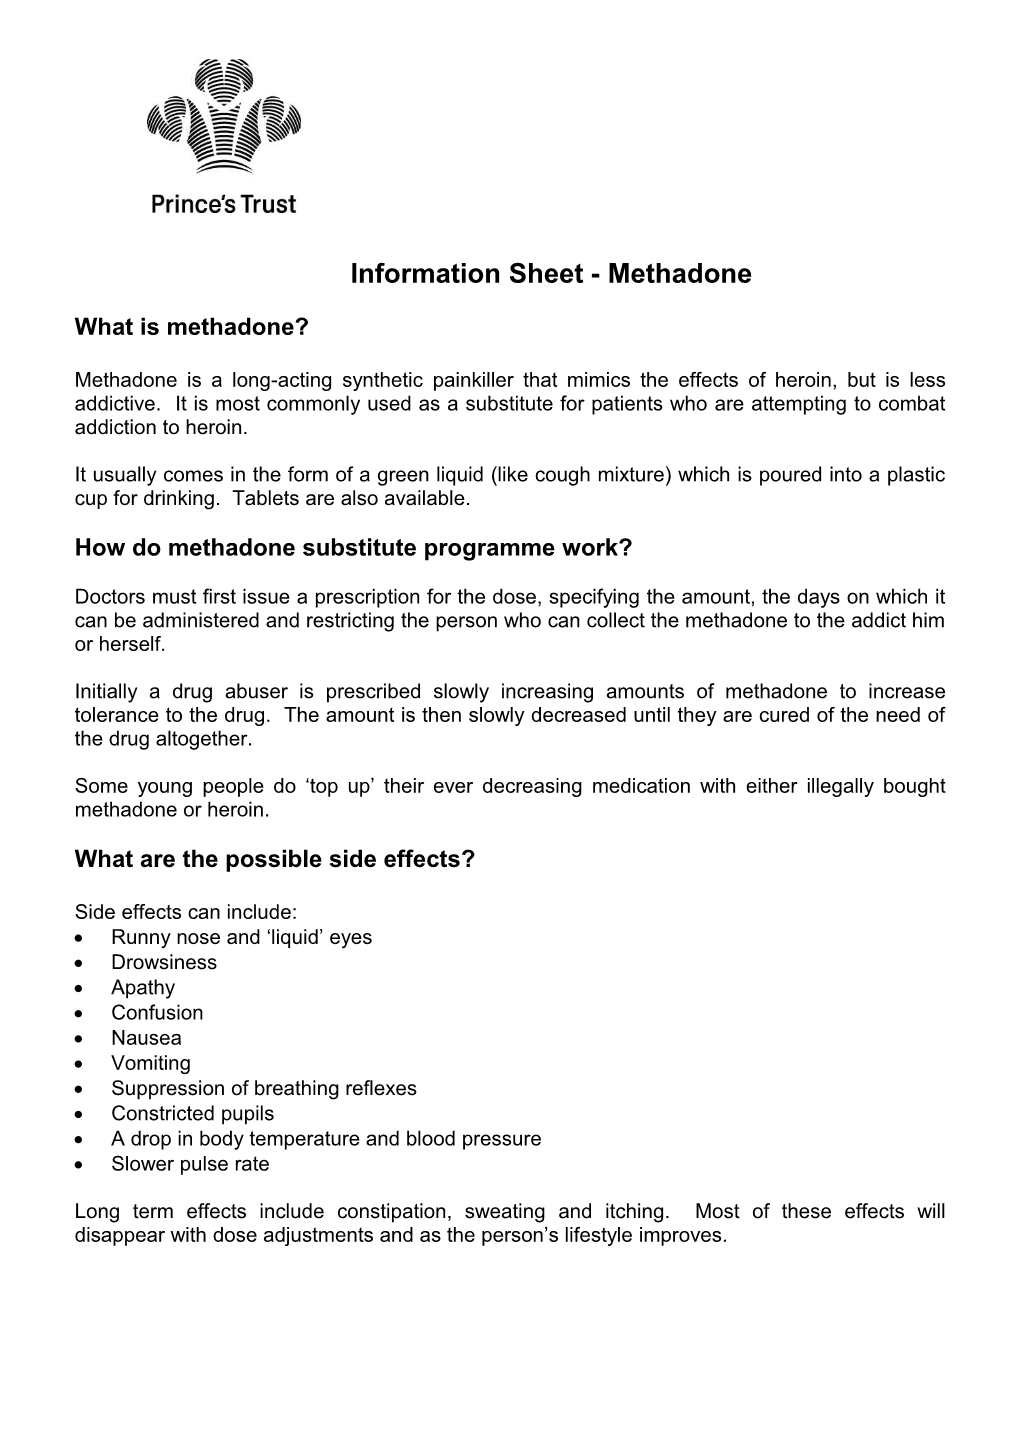 Information Sheet - Methadone